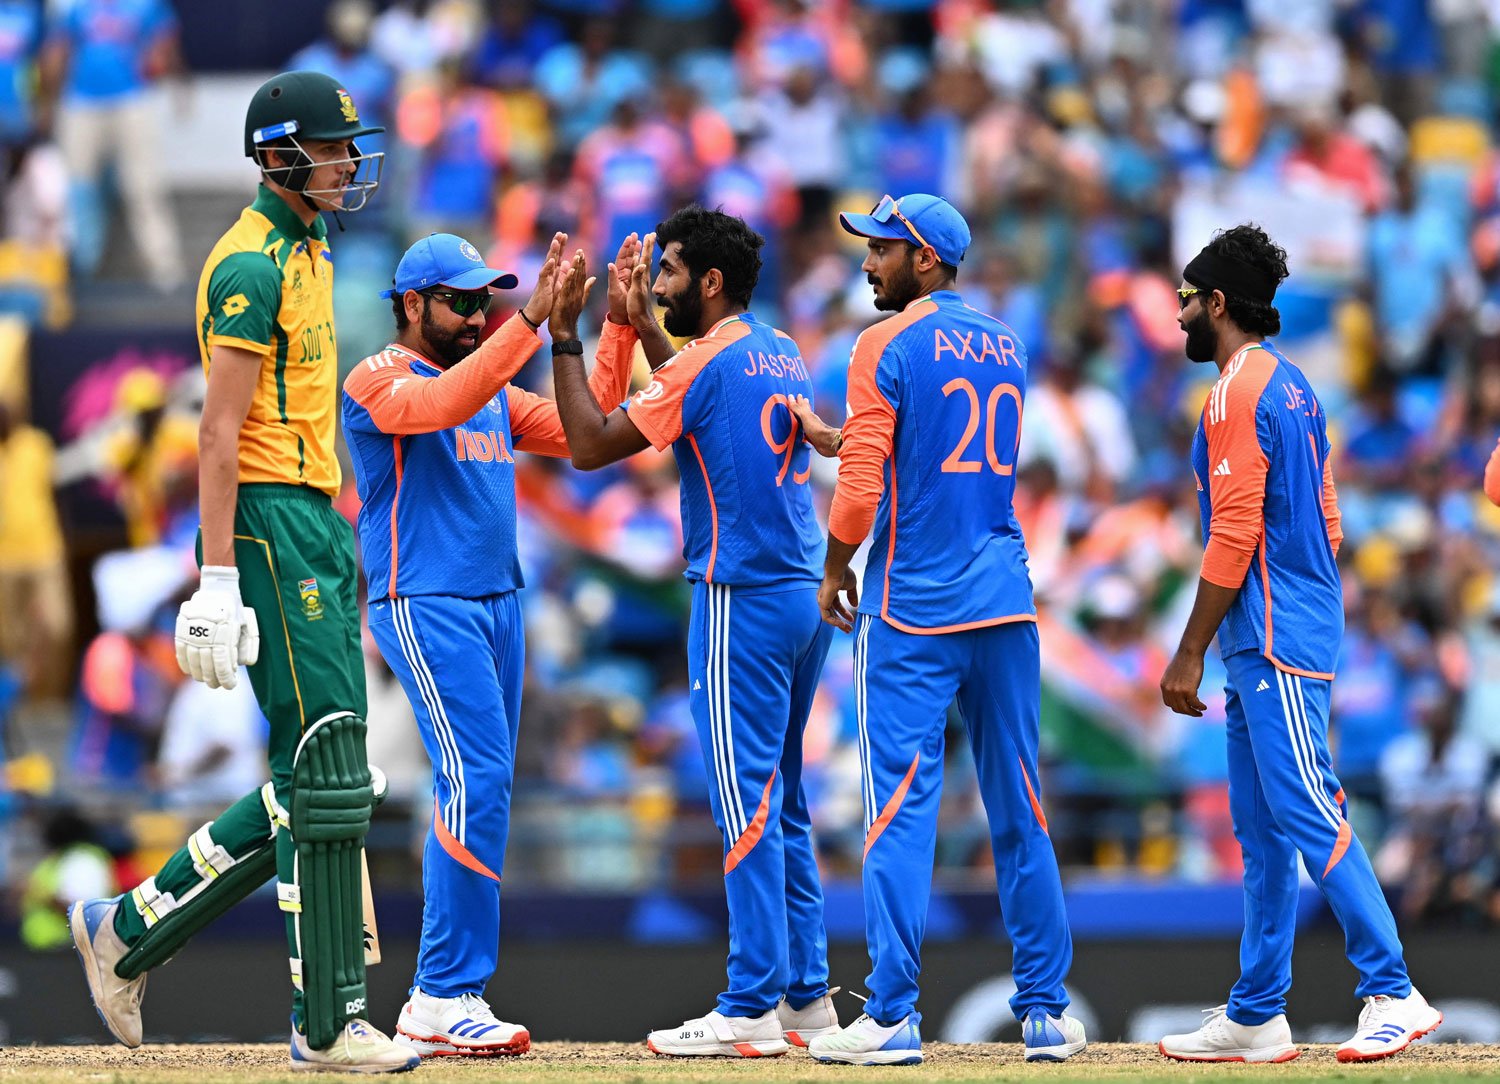 بھارتی بولرز نے جنوبی افریقا سے جیتا ہوا میچ چھین لیا، بھارت دوسری بار ٹی ٹوئنٹی کا عالمی چیمپئن بن گیا